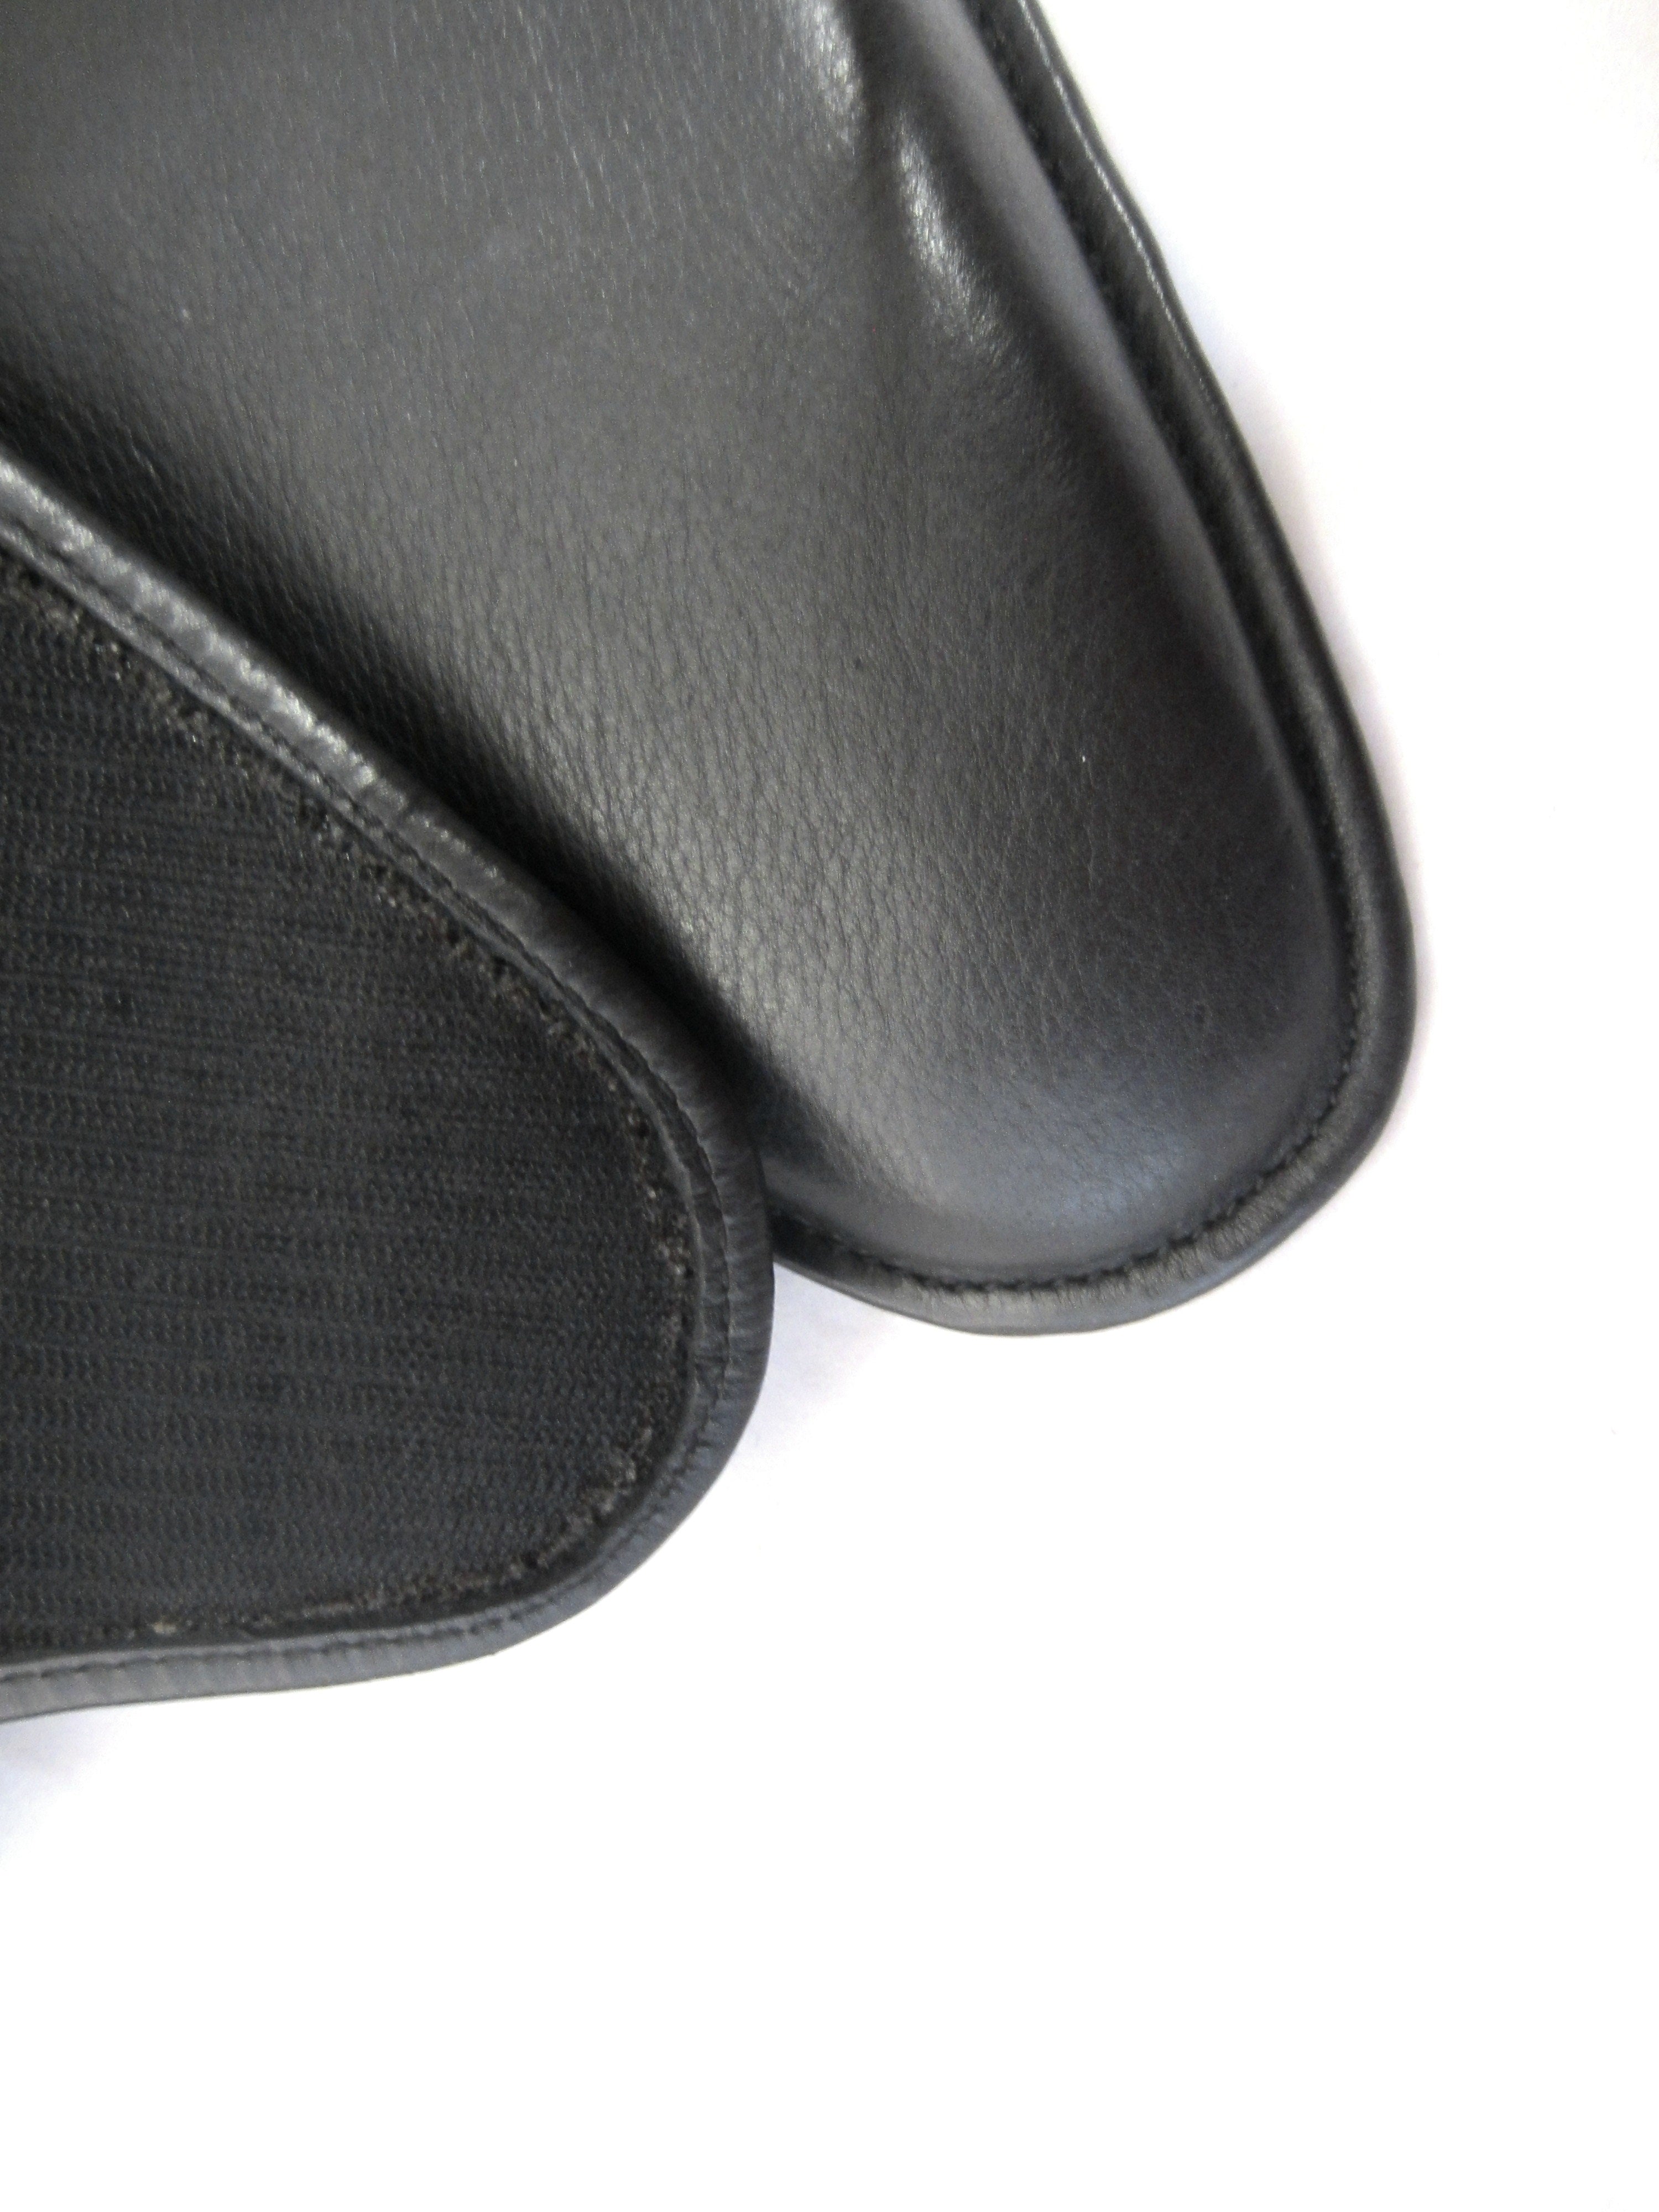 Forme de dressage avec coussin Velcro surélevé de 5-4-4 cm sur le devant ; Panneaux/coussins de selle